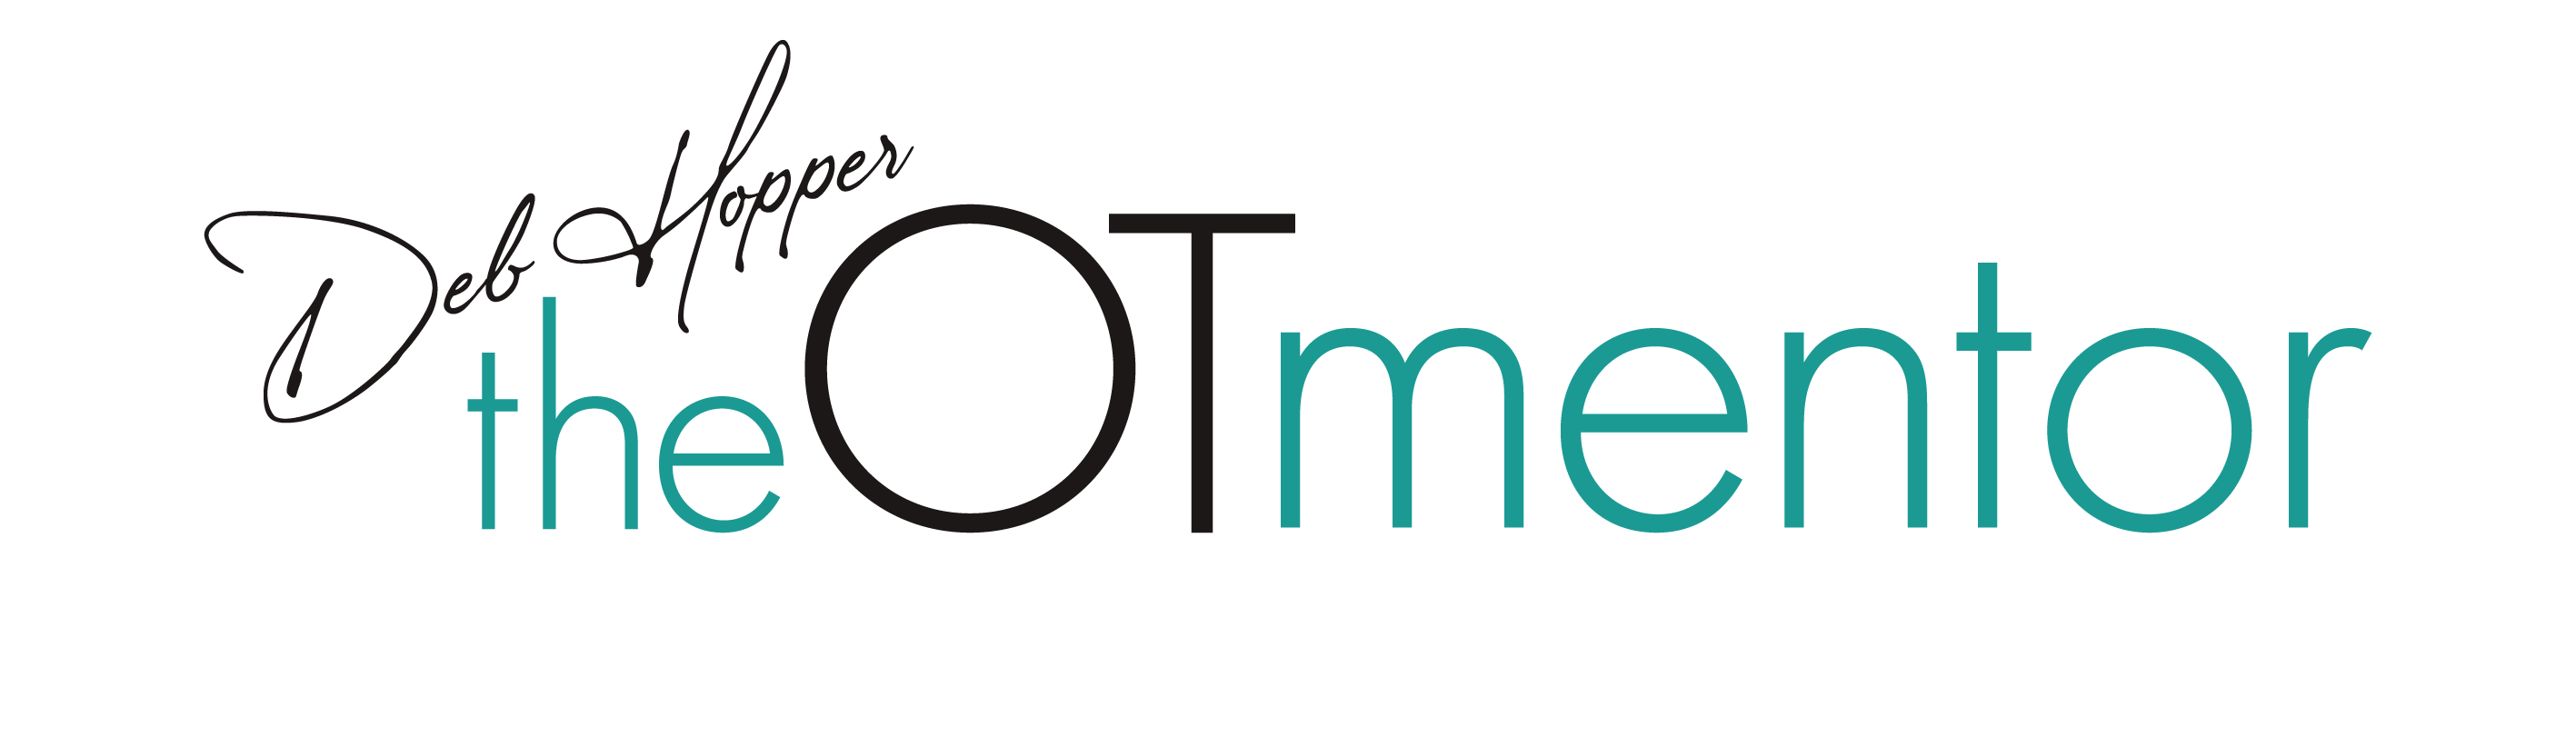 The OT Mentor Logo